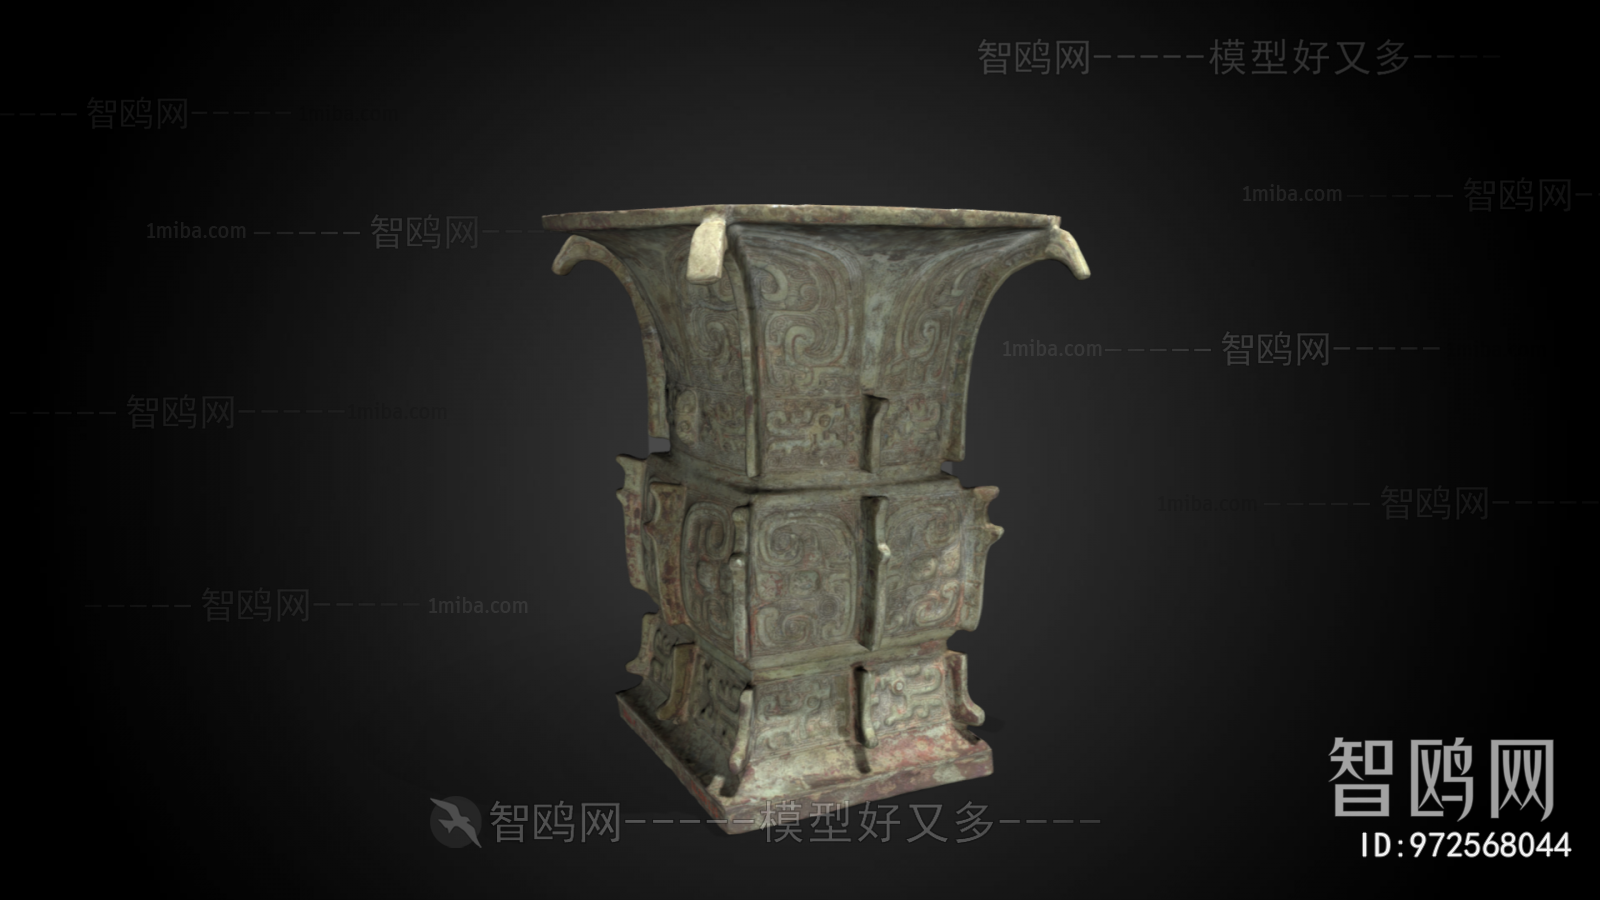 中式铜铸艺术摆件